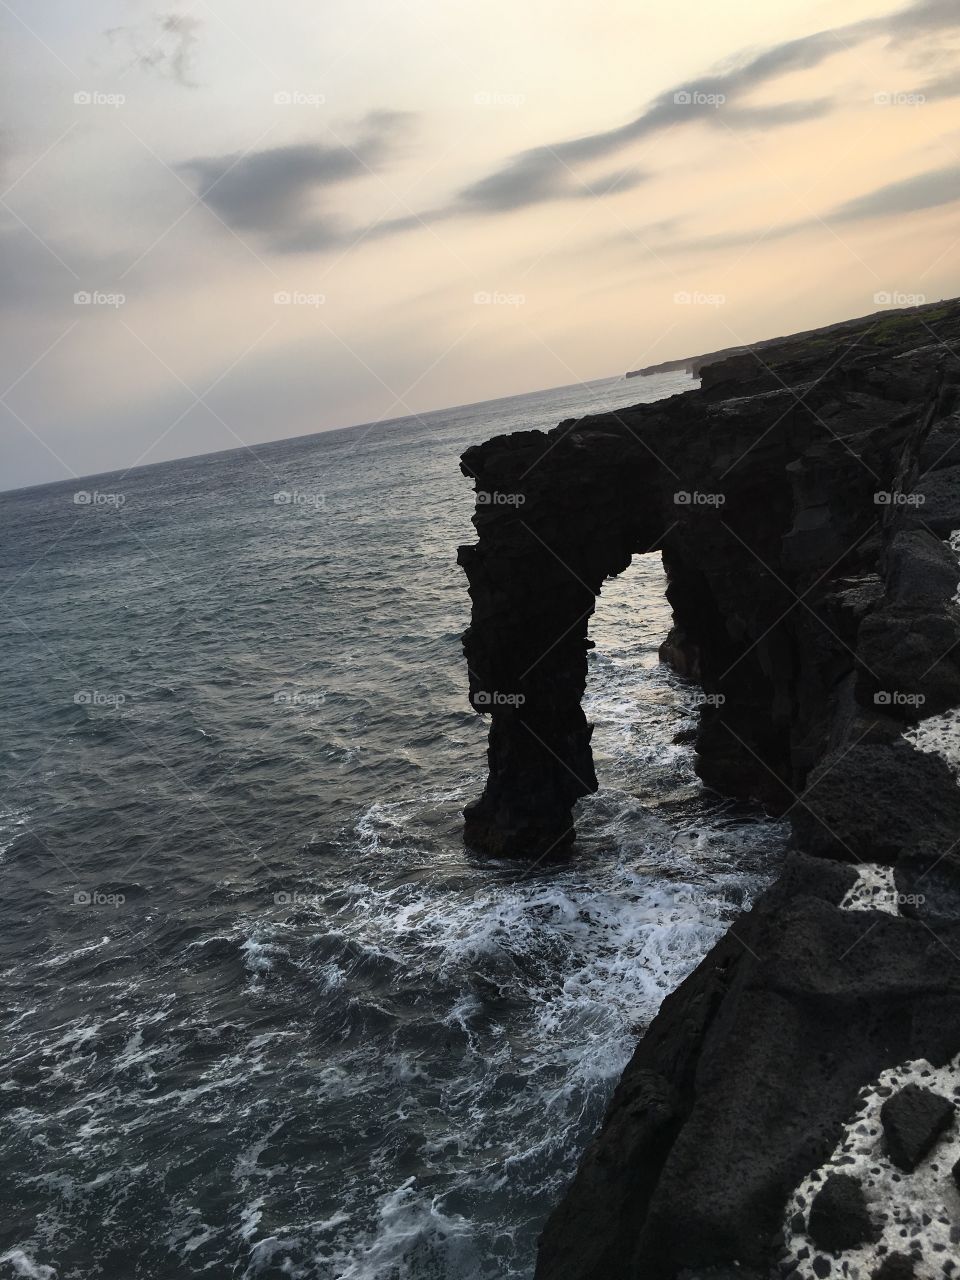 Sea cliff